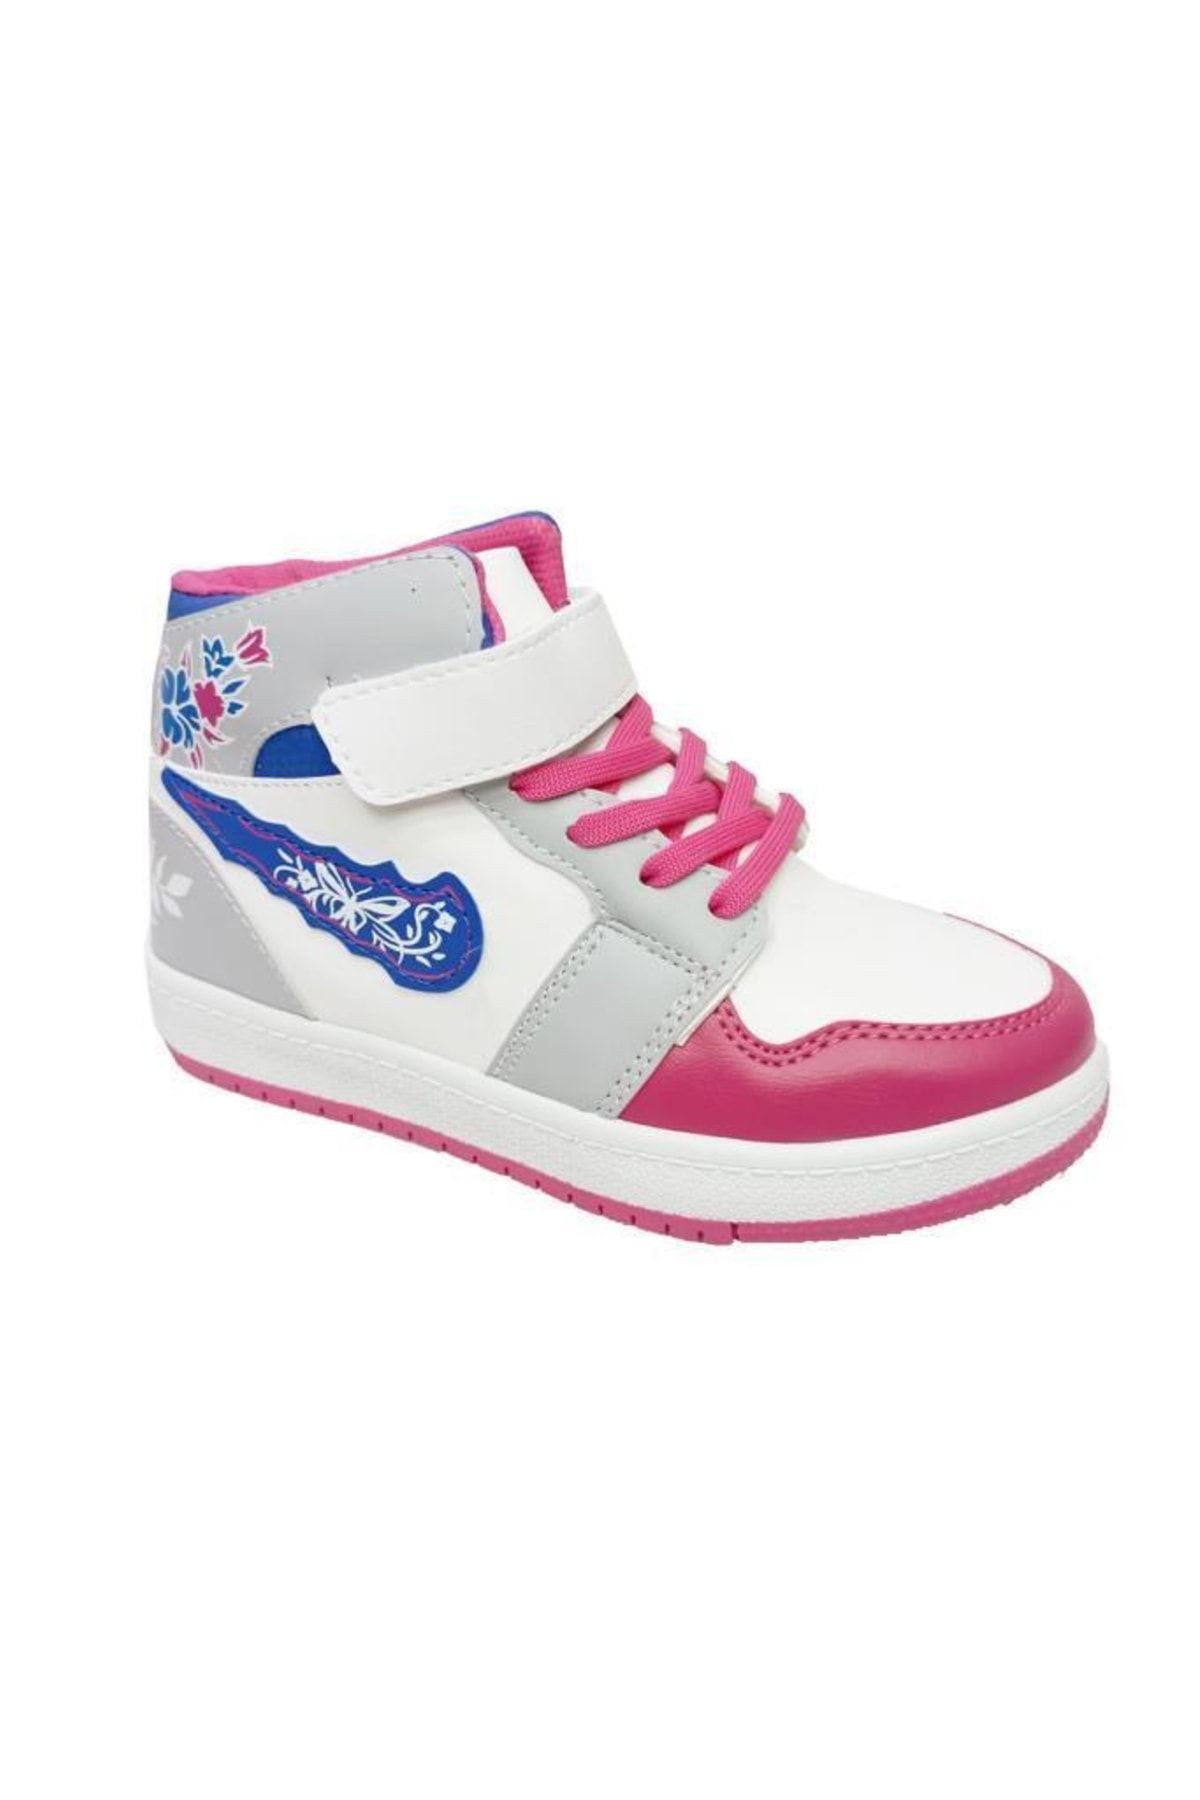 Callion 048 Deri Sneakers Kız Çocuk Spor Ayakkabı 31-35 Beyaz Fuşya Buz